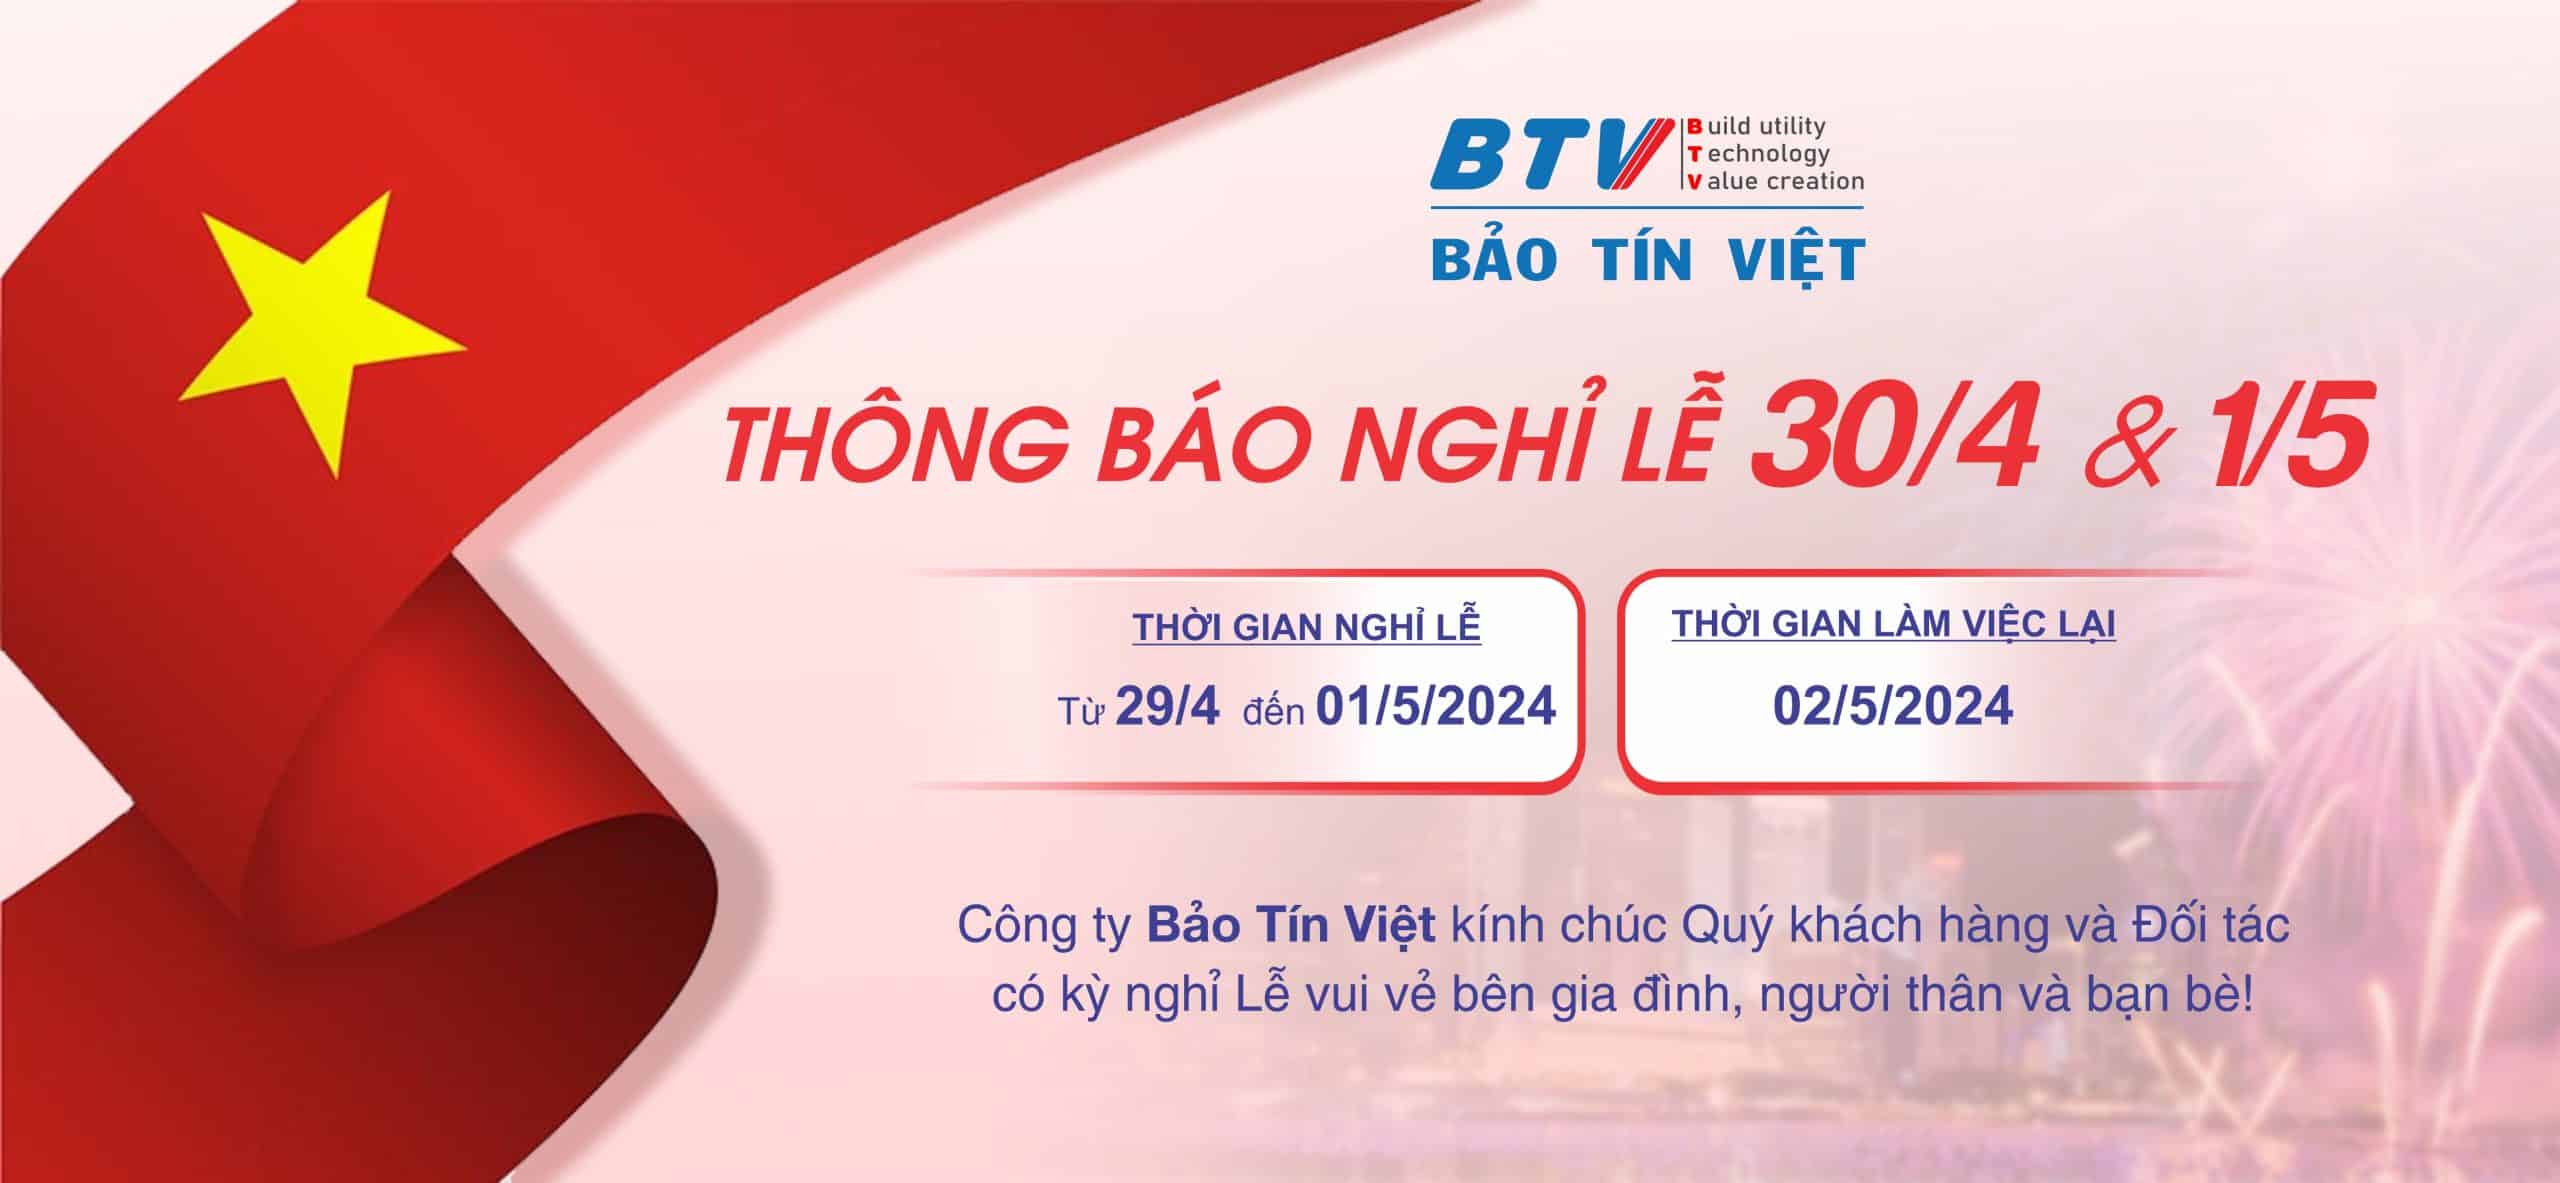 BTVtech - slide Thong bao nghi le 30-4-2024